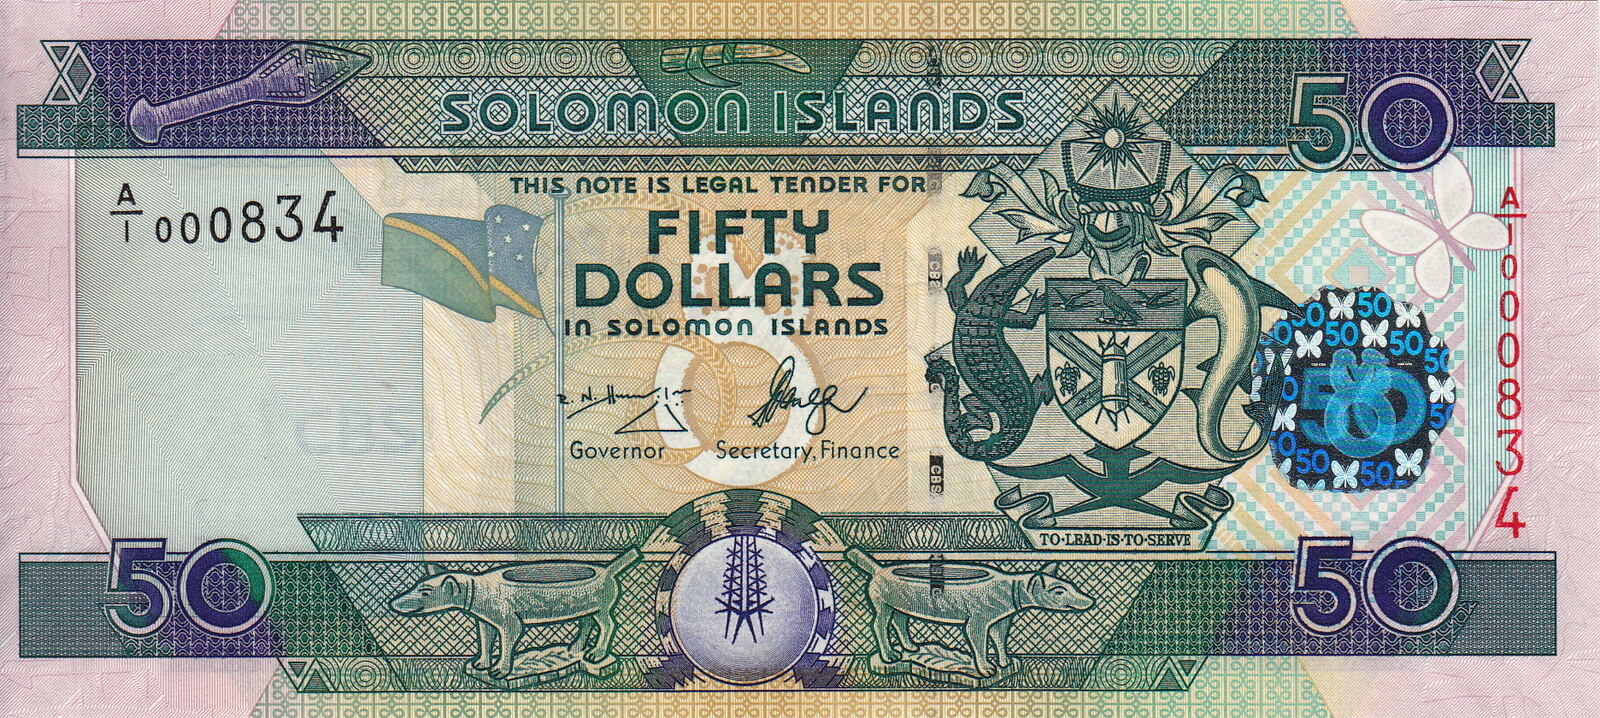 Банкнота Соломоновы острова. Соломоновы острова валюта. Банкноты Соломоновых островов. Купюры Соломоновы острова. 50 islands